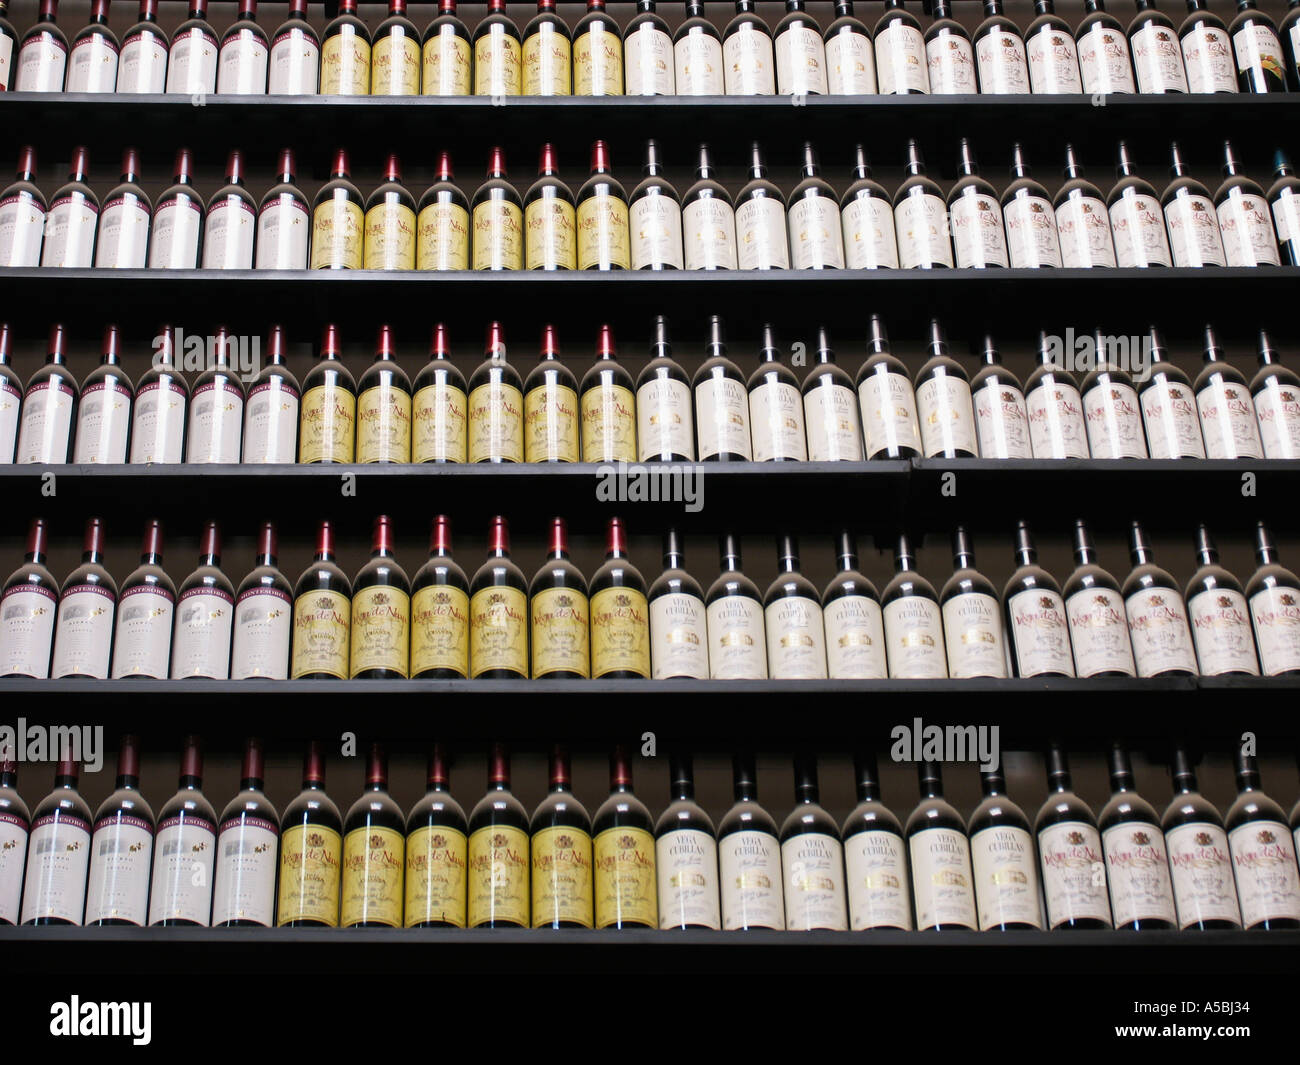 Bottles of wine for sale on supermarket shelves Stock Photo